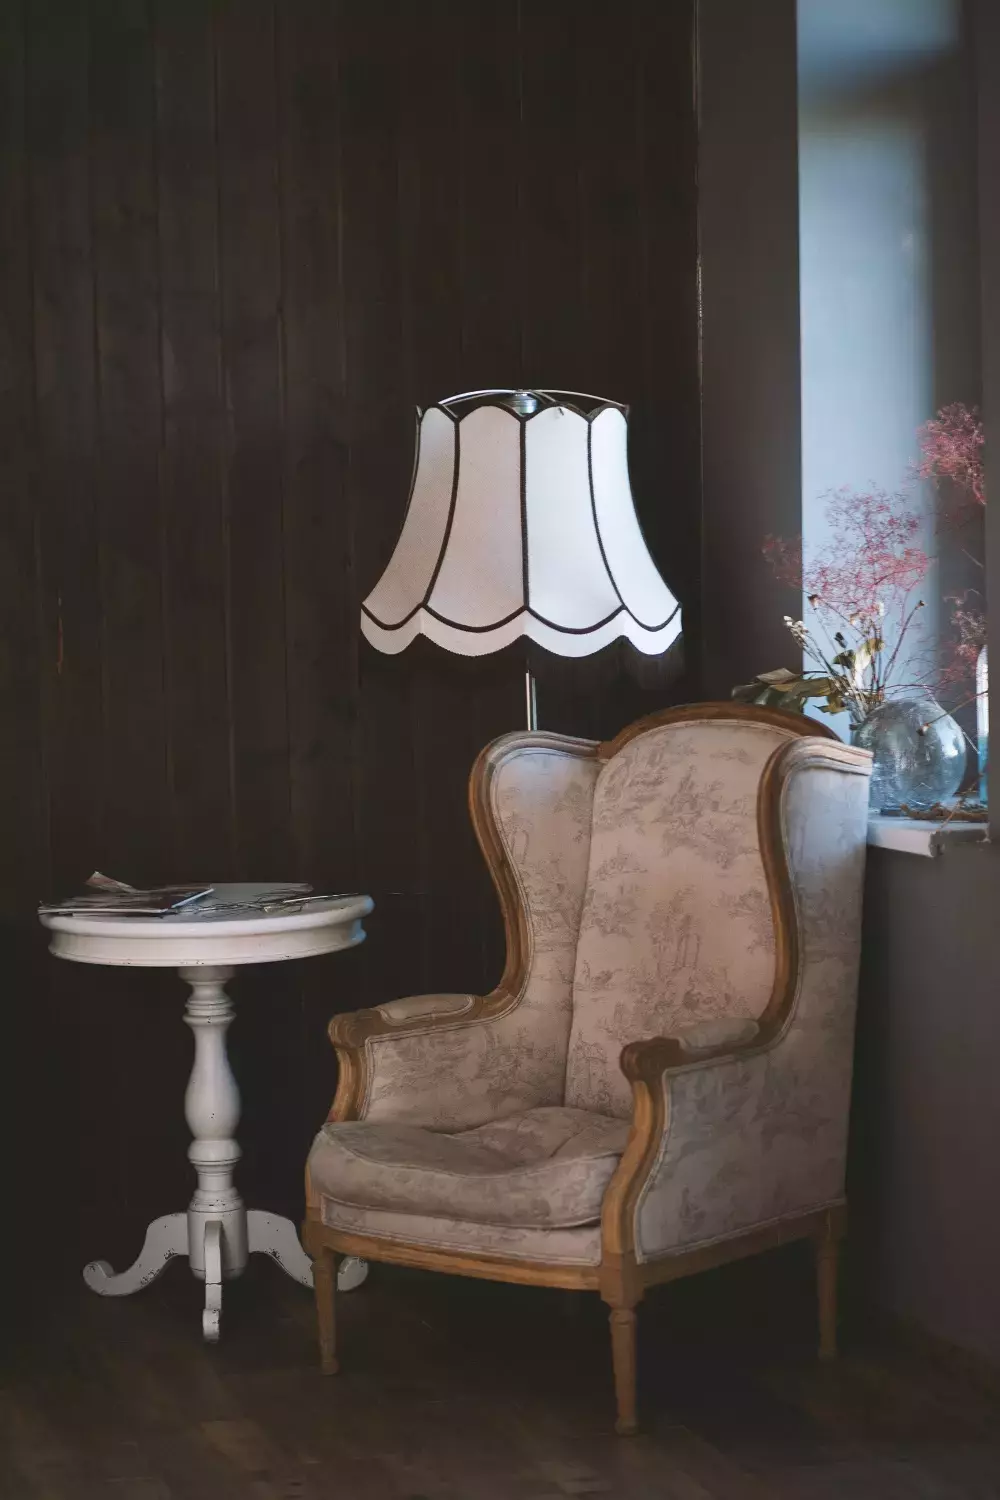 Kreslo, stolík a lampička